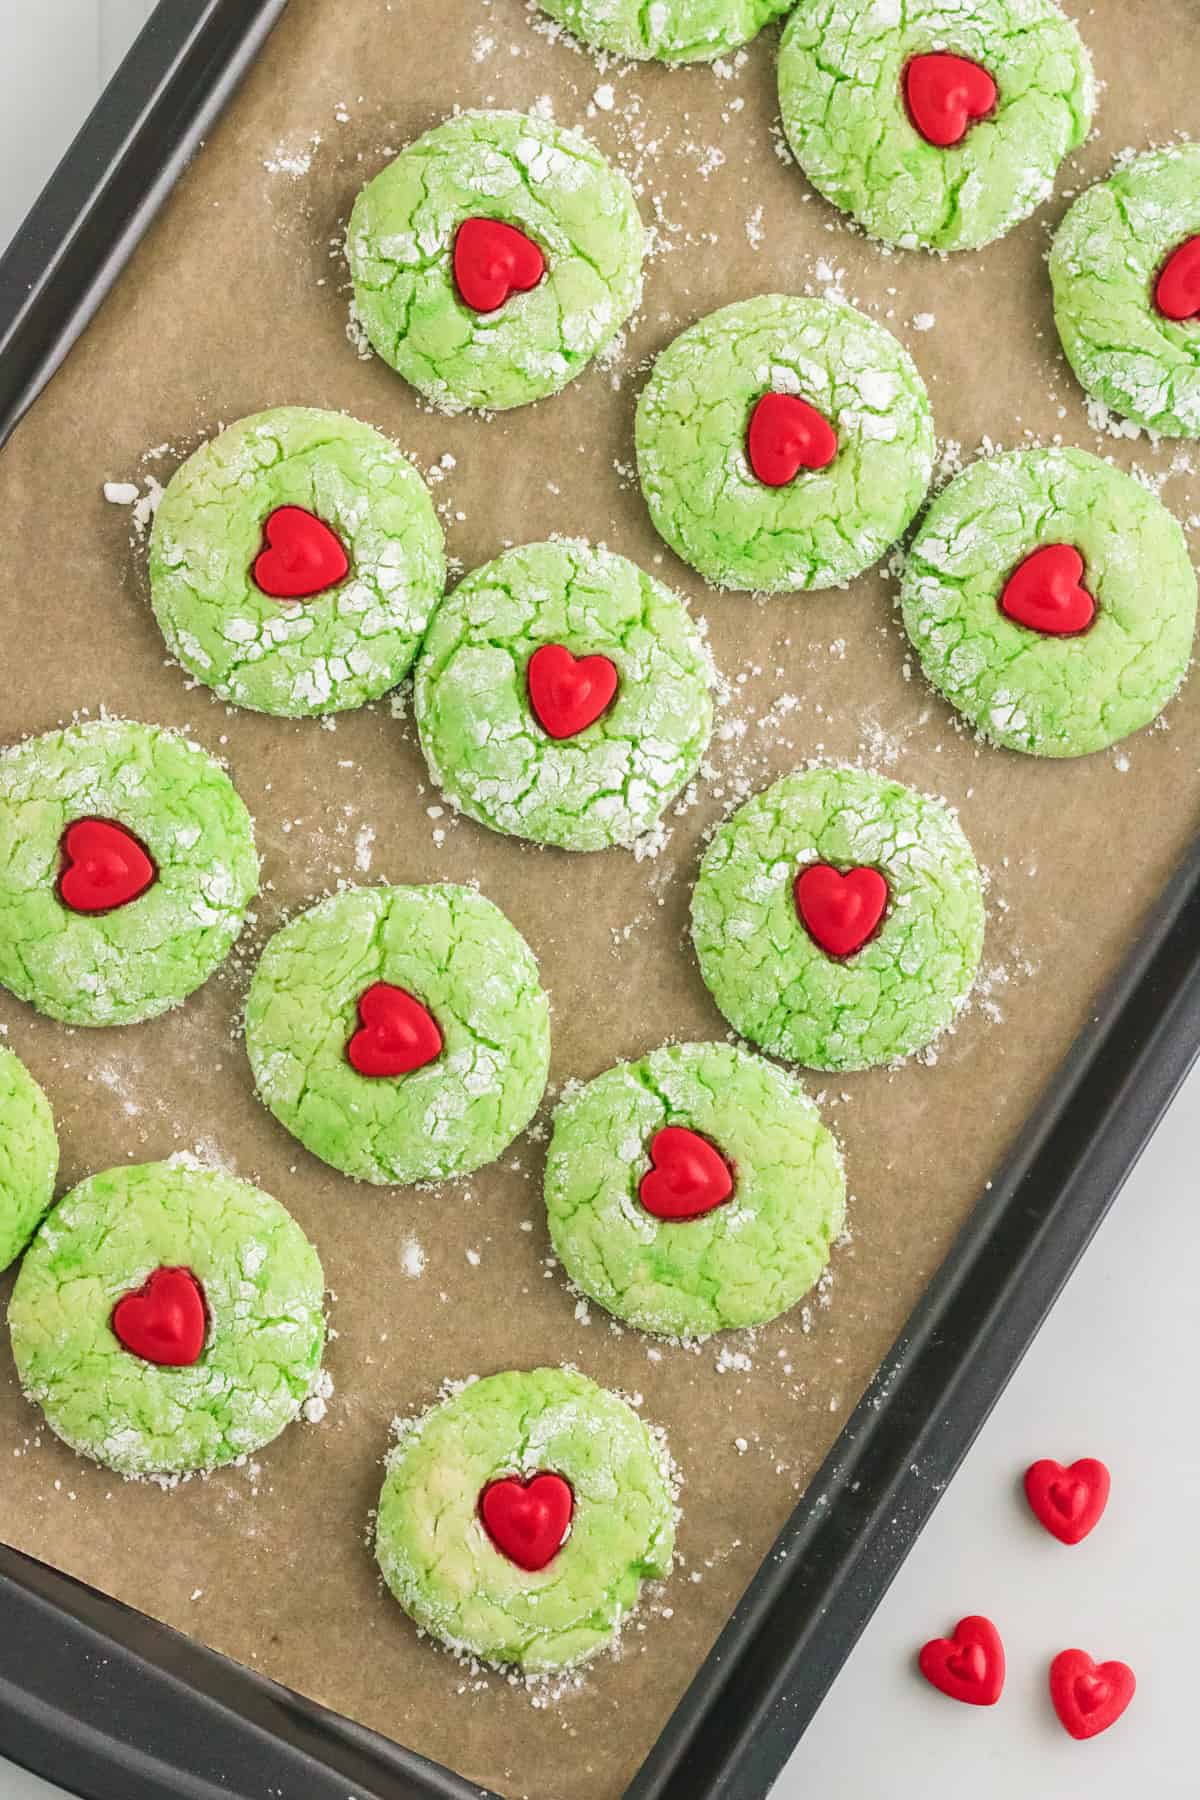 Grinch Cake Mix Cookies on baking sheet